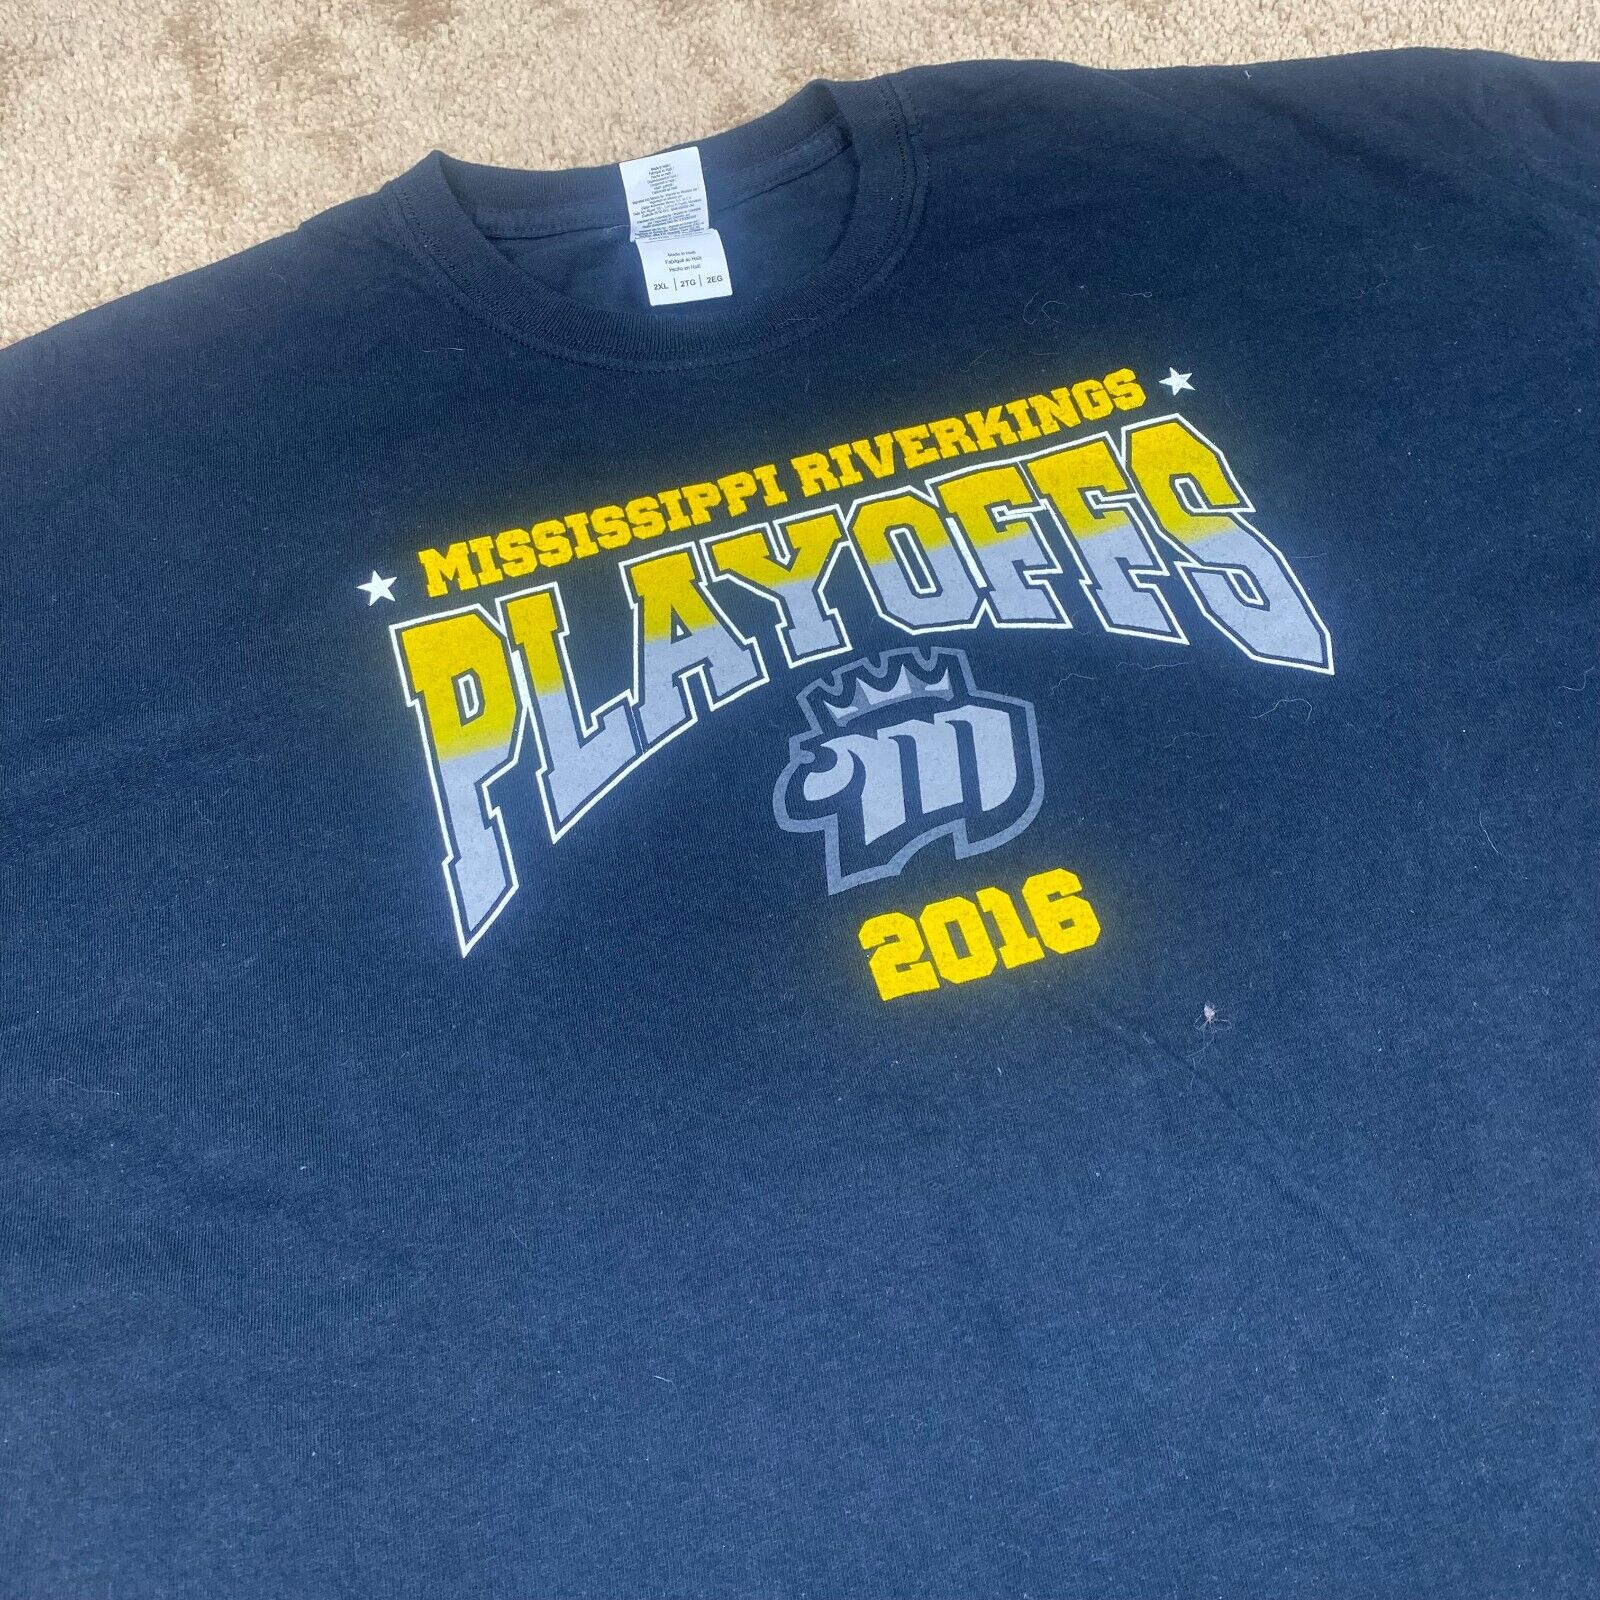 Memphis Mississippi Riverkings Logo “2016 Playoffs” Black XXL T-Shirt 7.12